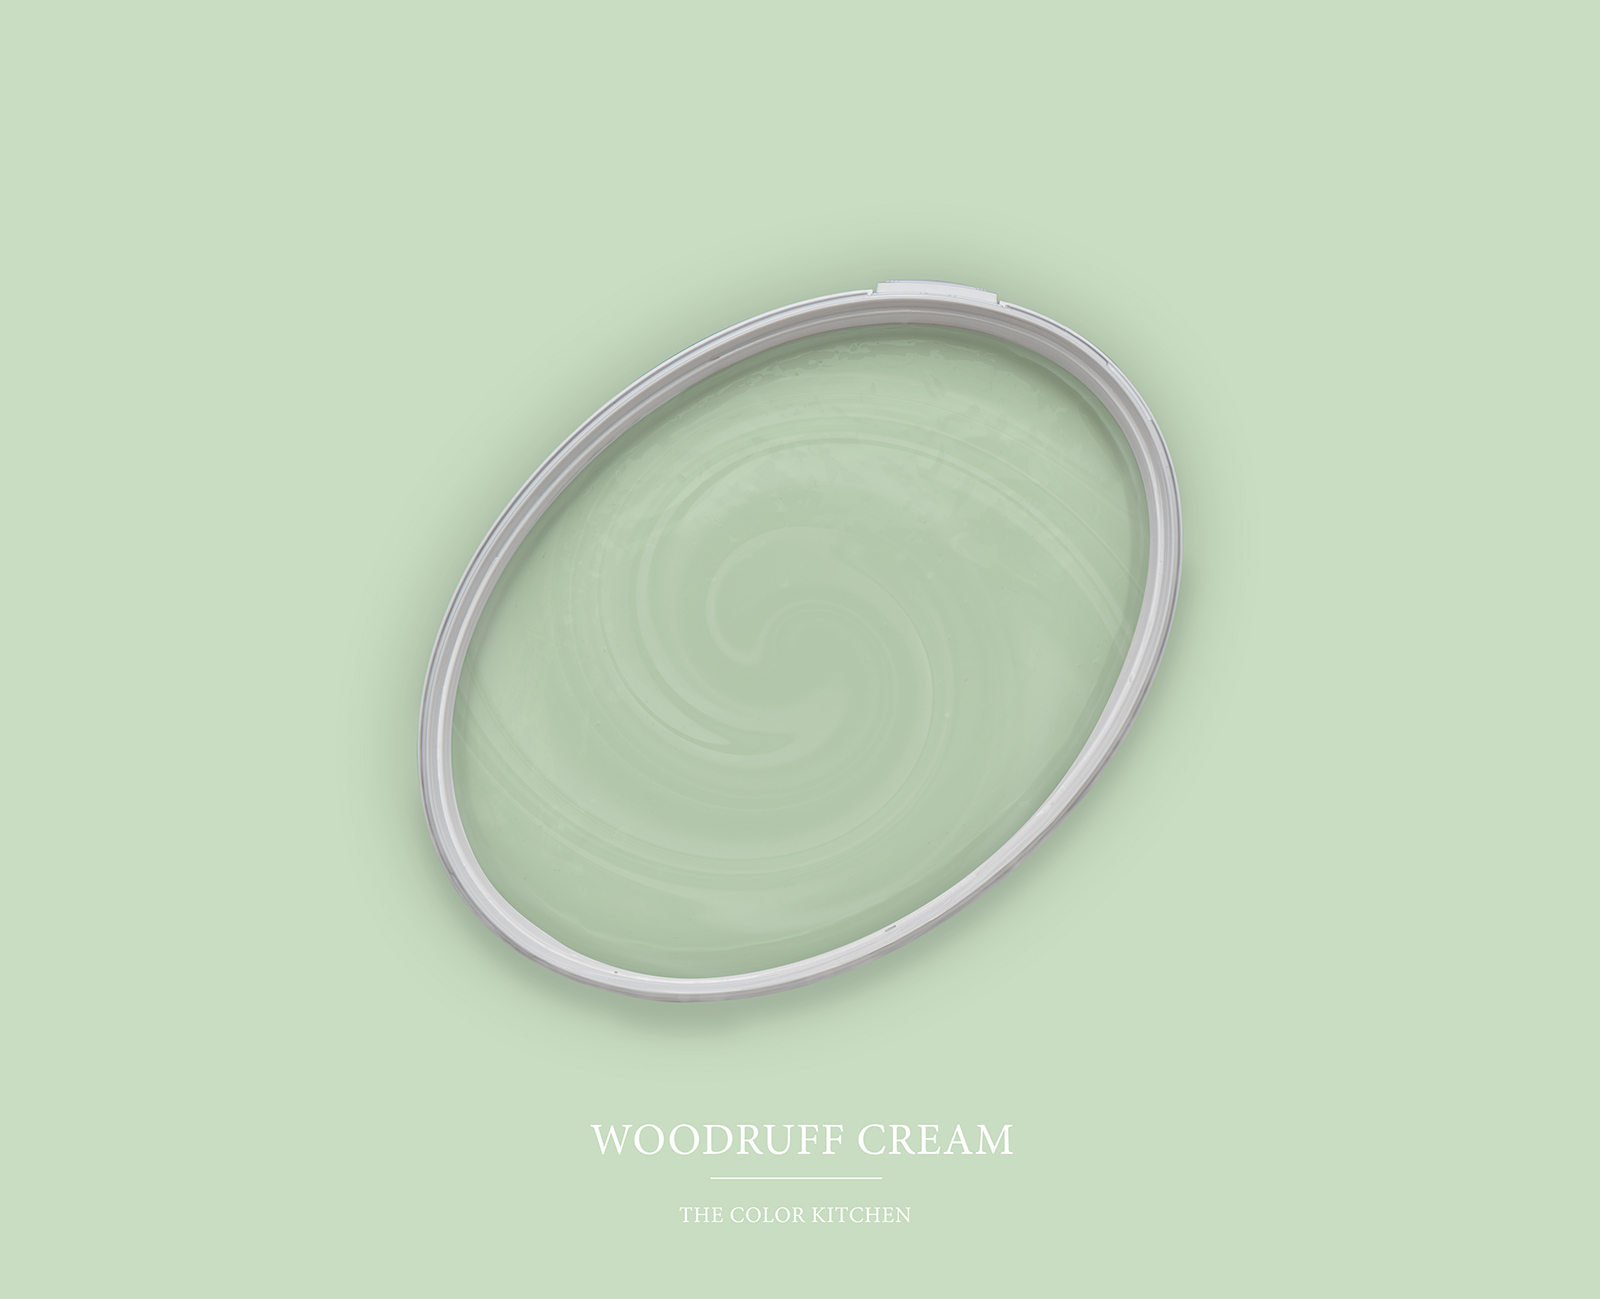         Wandfarbe in heiterem Pastellgrün »Woodruff Cream« TCK4007 – 2,5 Liter
    